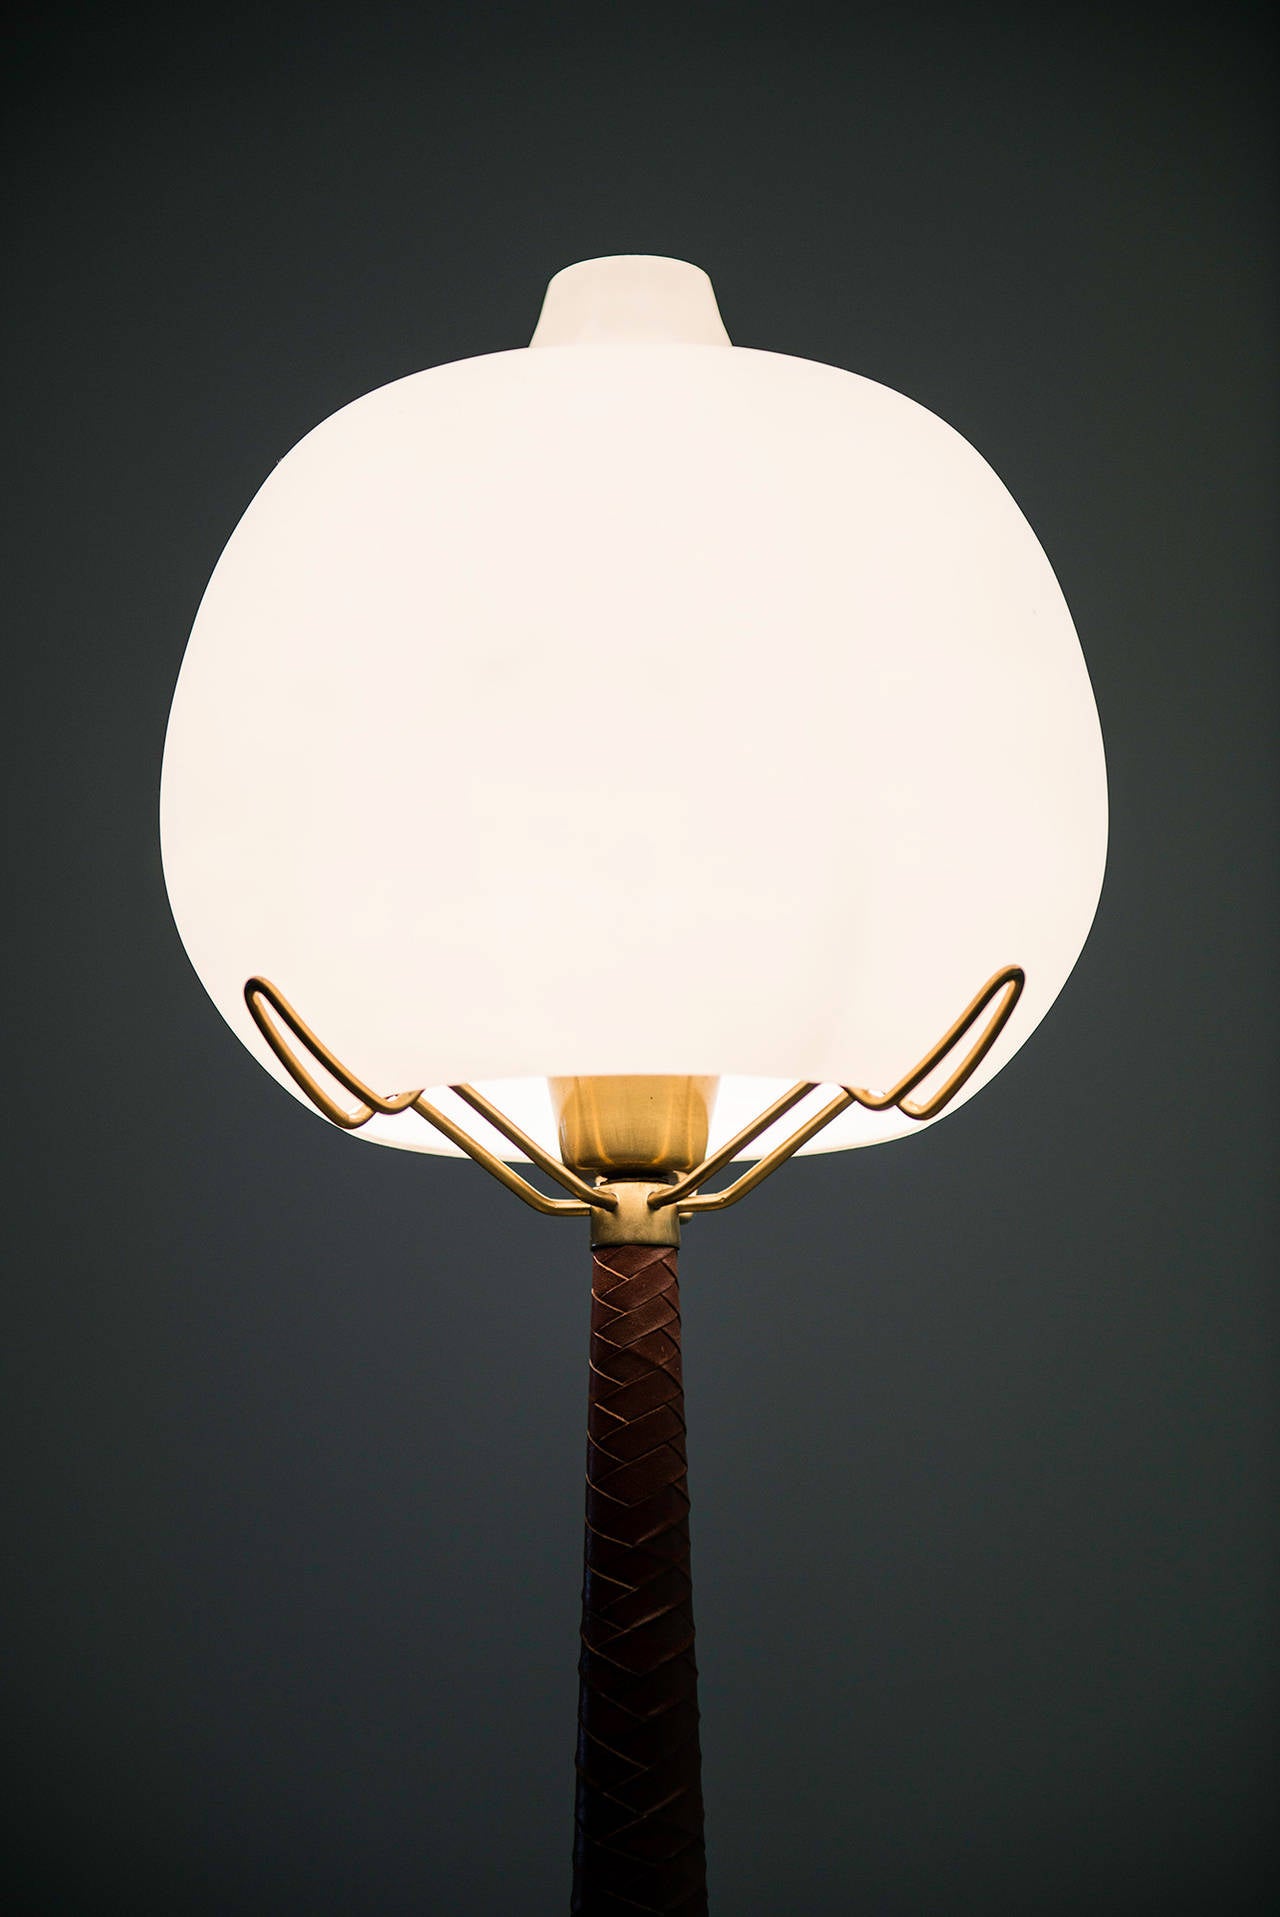 Hans Bergström table lamps model 700 by Ateljé Lyktan in Sweden 1